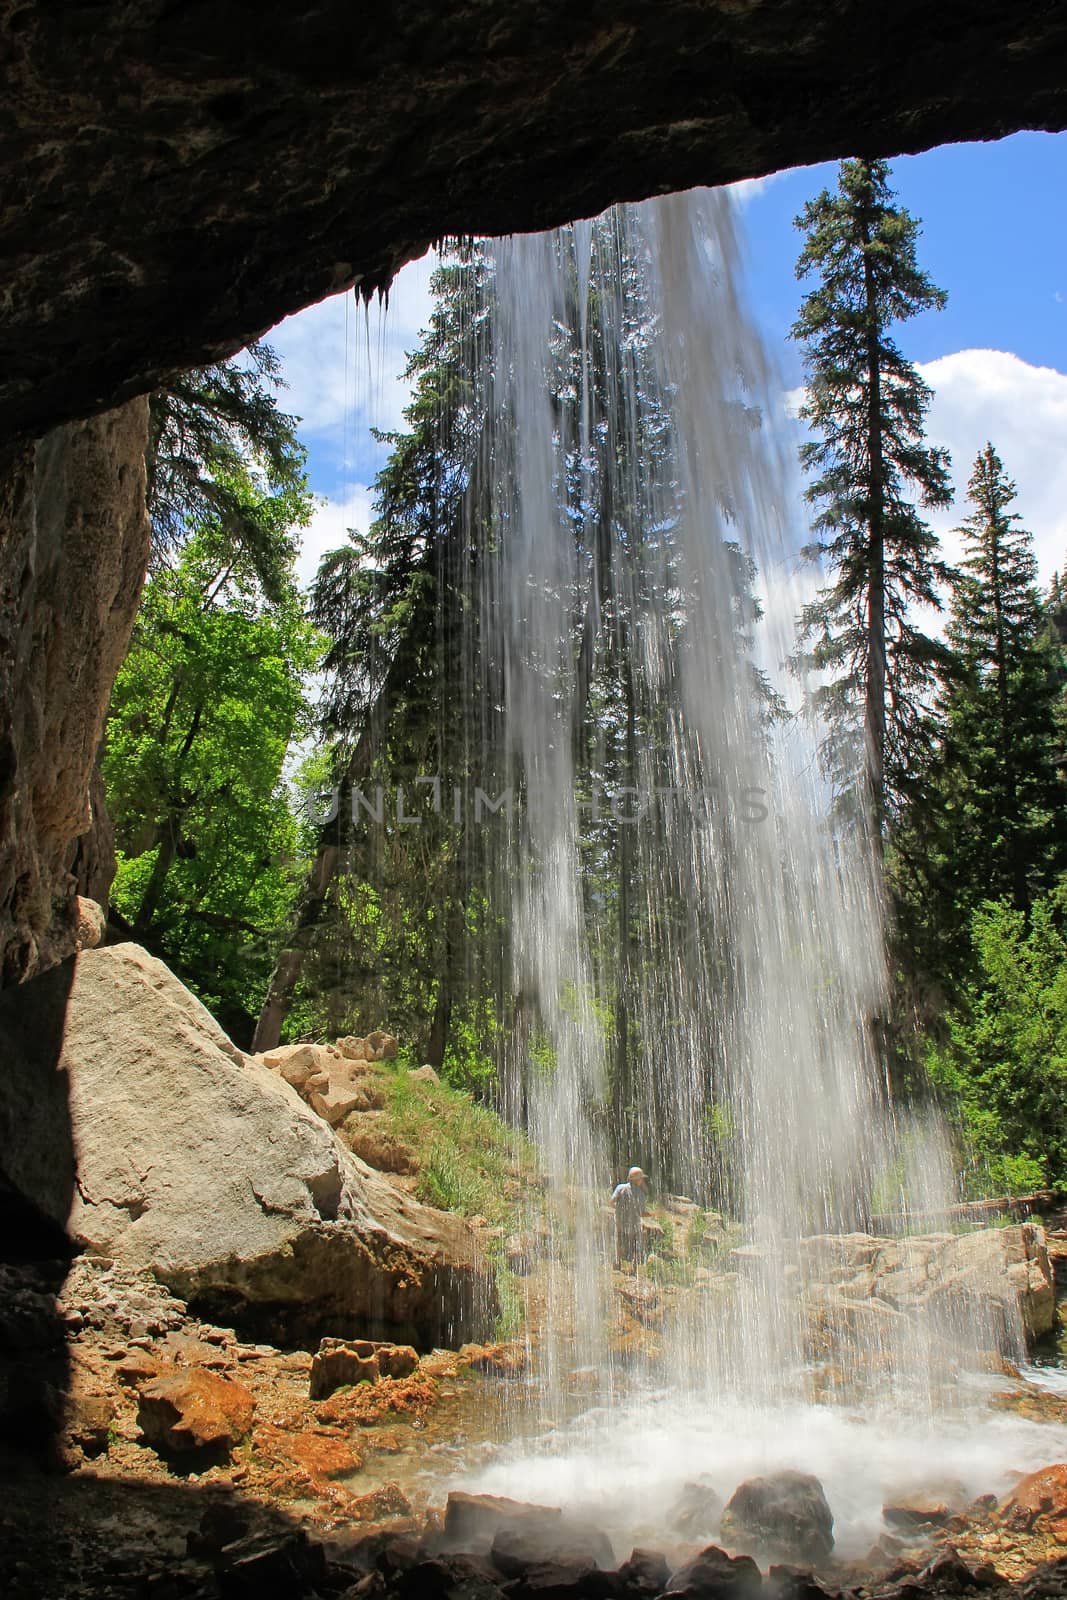 Spouting Rock waterfall, Hanging lake, Glenwood Canyon, Colorado, USA